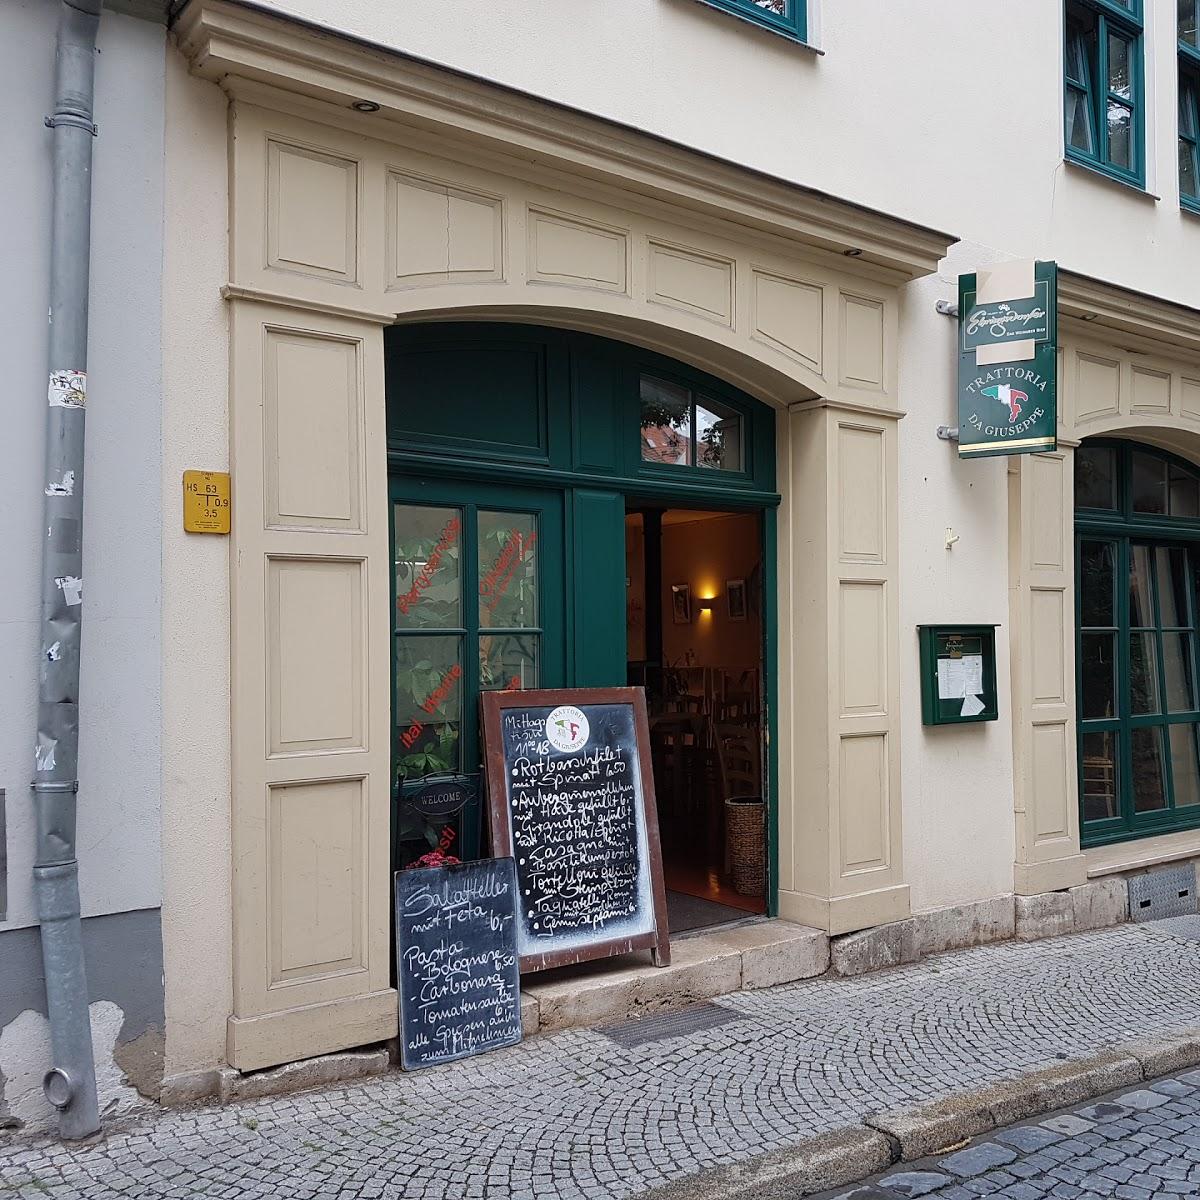 Restaurant "Trattoria da Giuseppe" in  Weimar